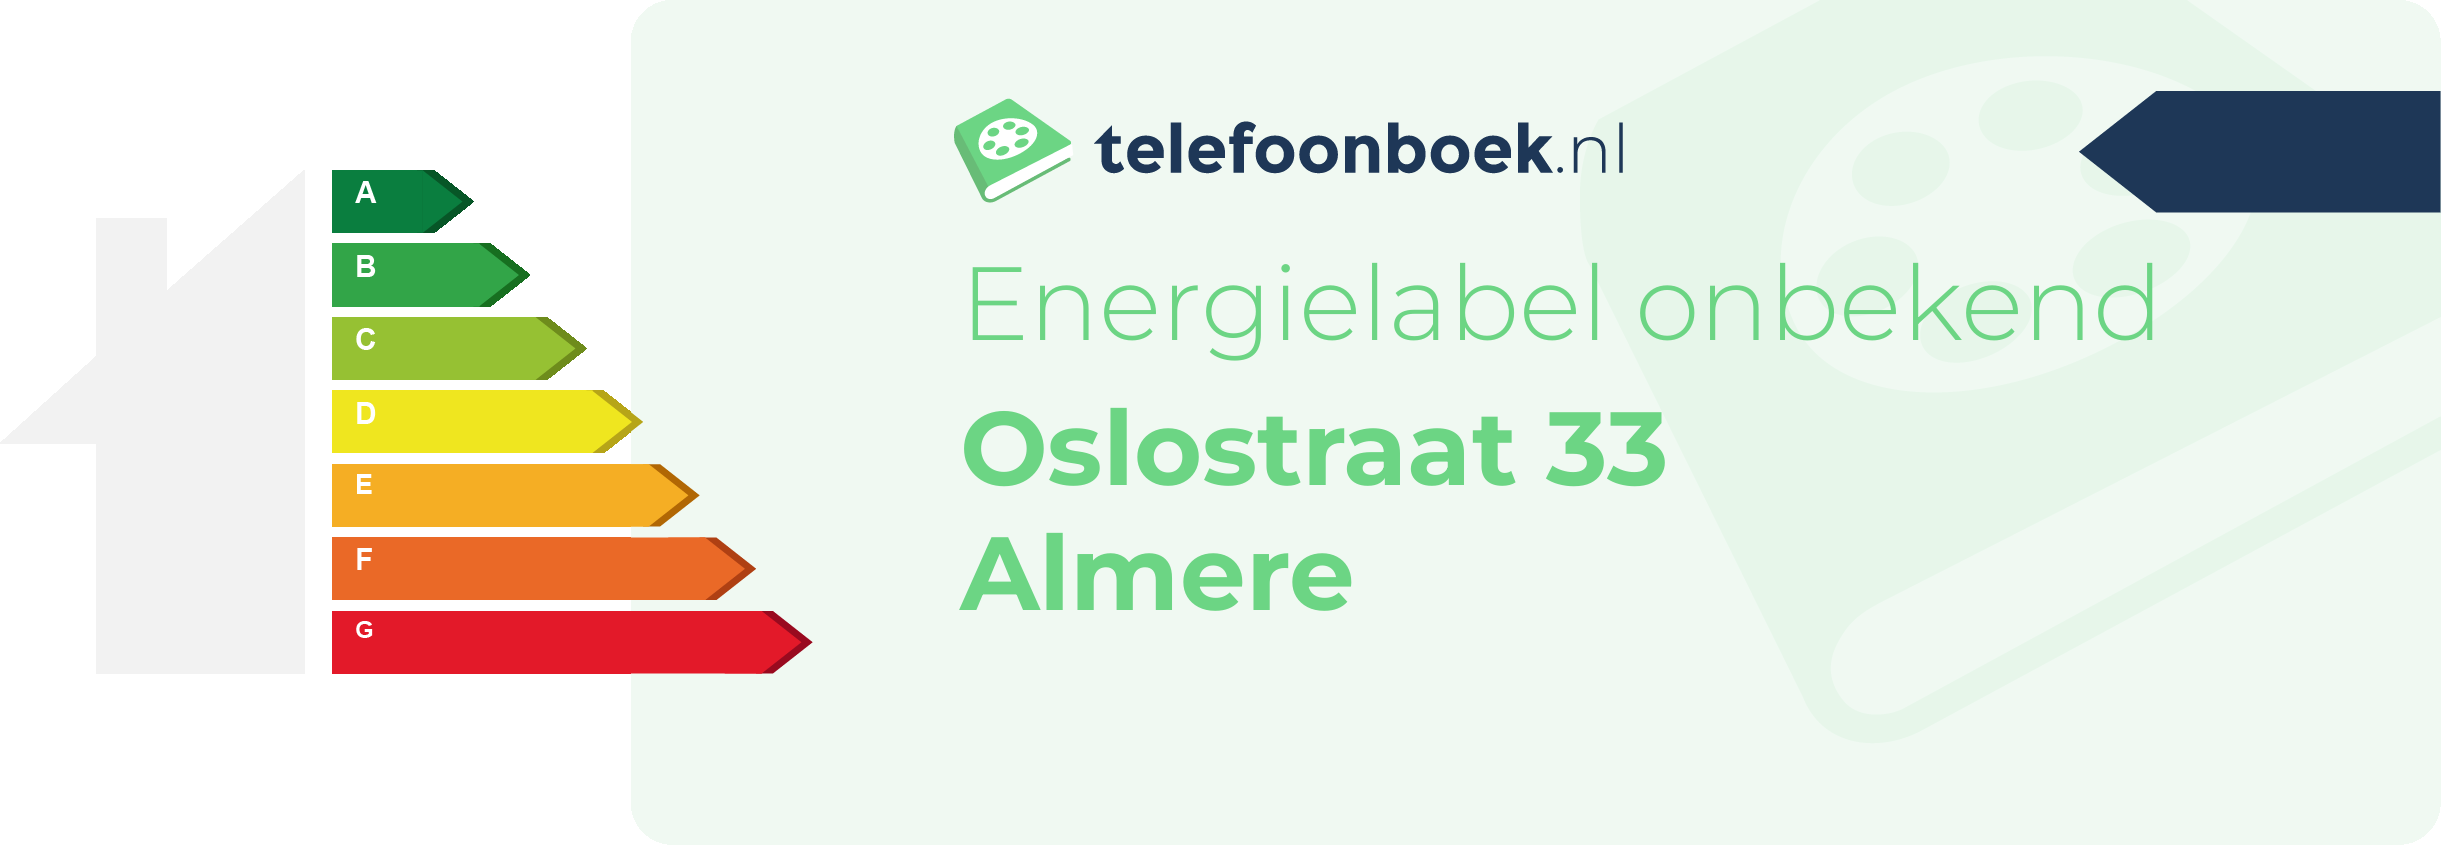 Energielabel Oslostraat 33 Almere